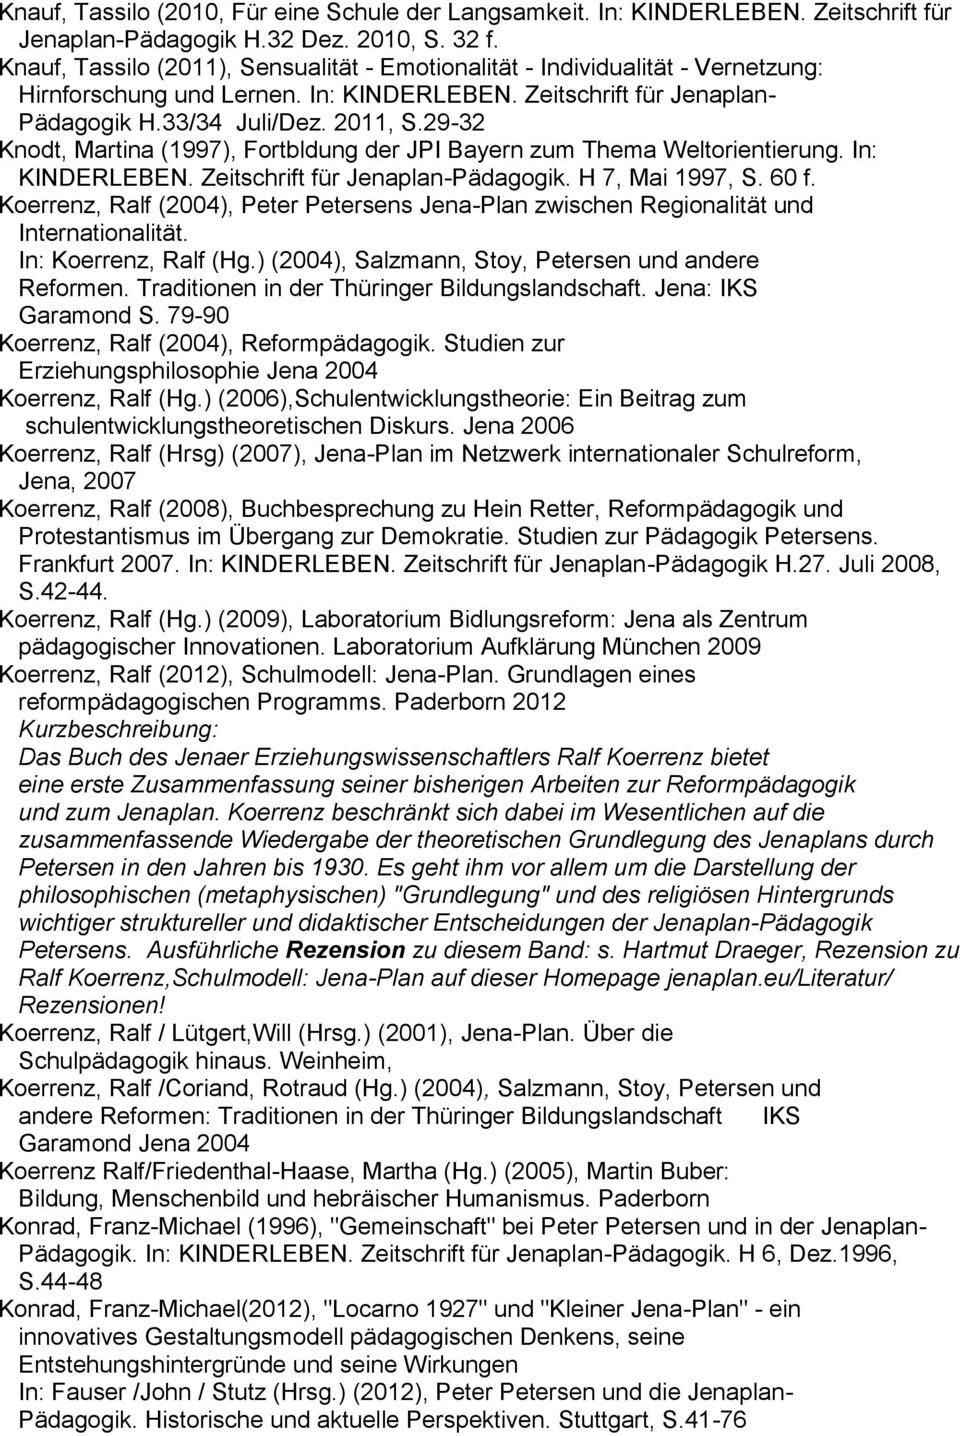 29-32 Knodt, Martina (1997), Fortbldung der JPI Bayern zum Thema Weltorientierung. In: KINDERLEBEN. Zeitschrift für Jenaplan-Pädagogik. H 7, Mai 1997, S. 60 f.